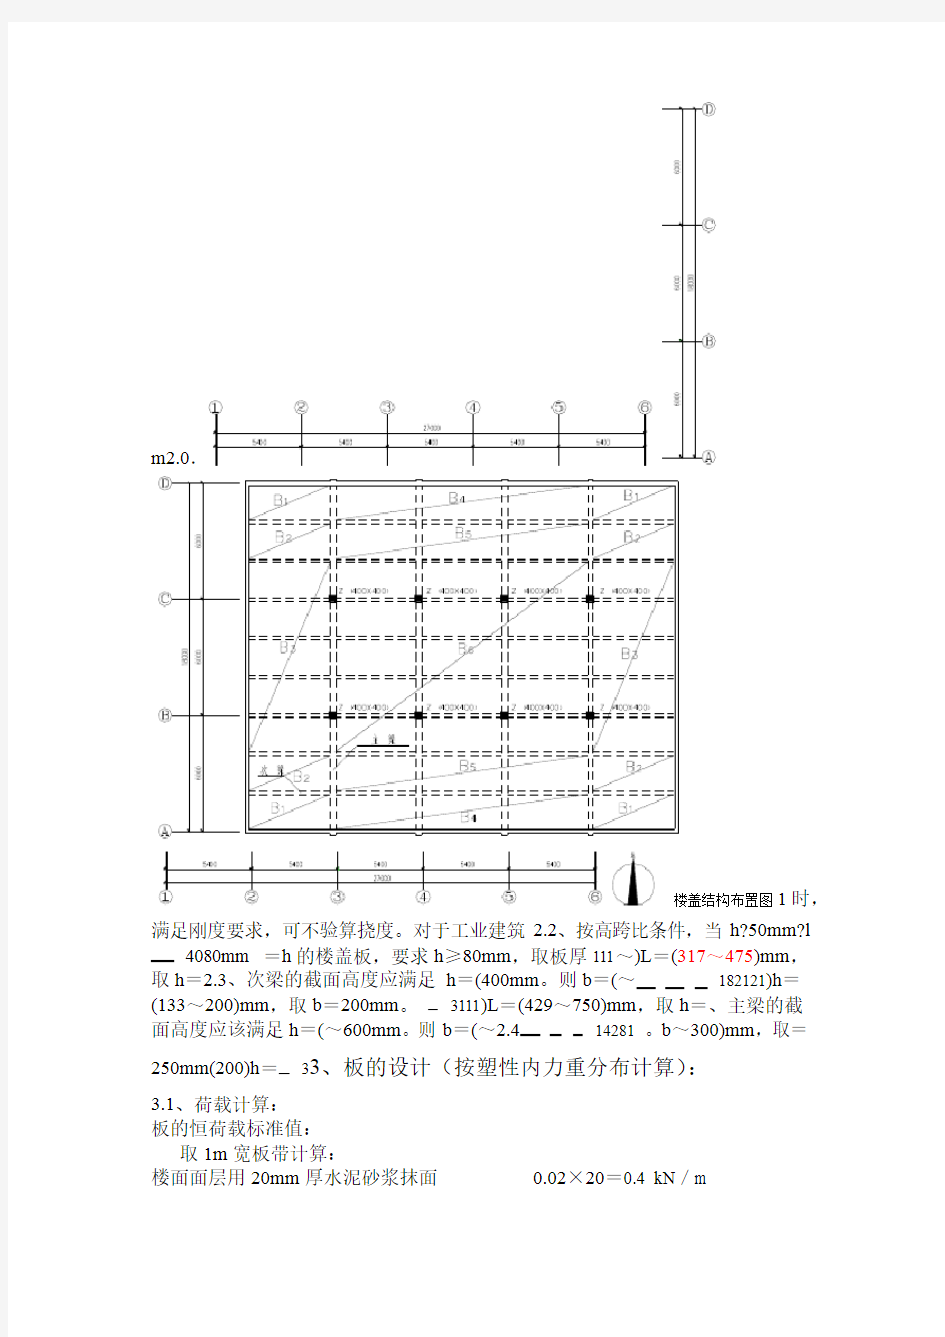 钢筋混凝土单向板肋梁楼盖课程设计计算书设计实例